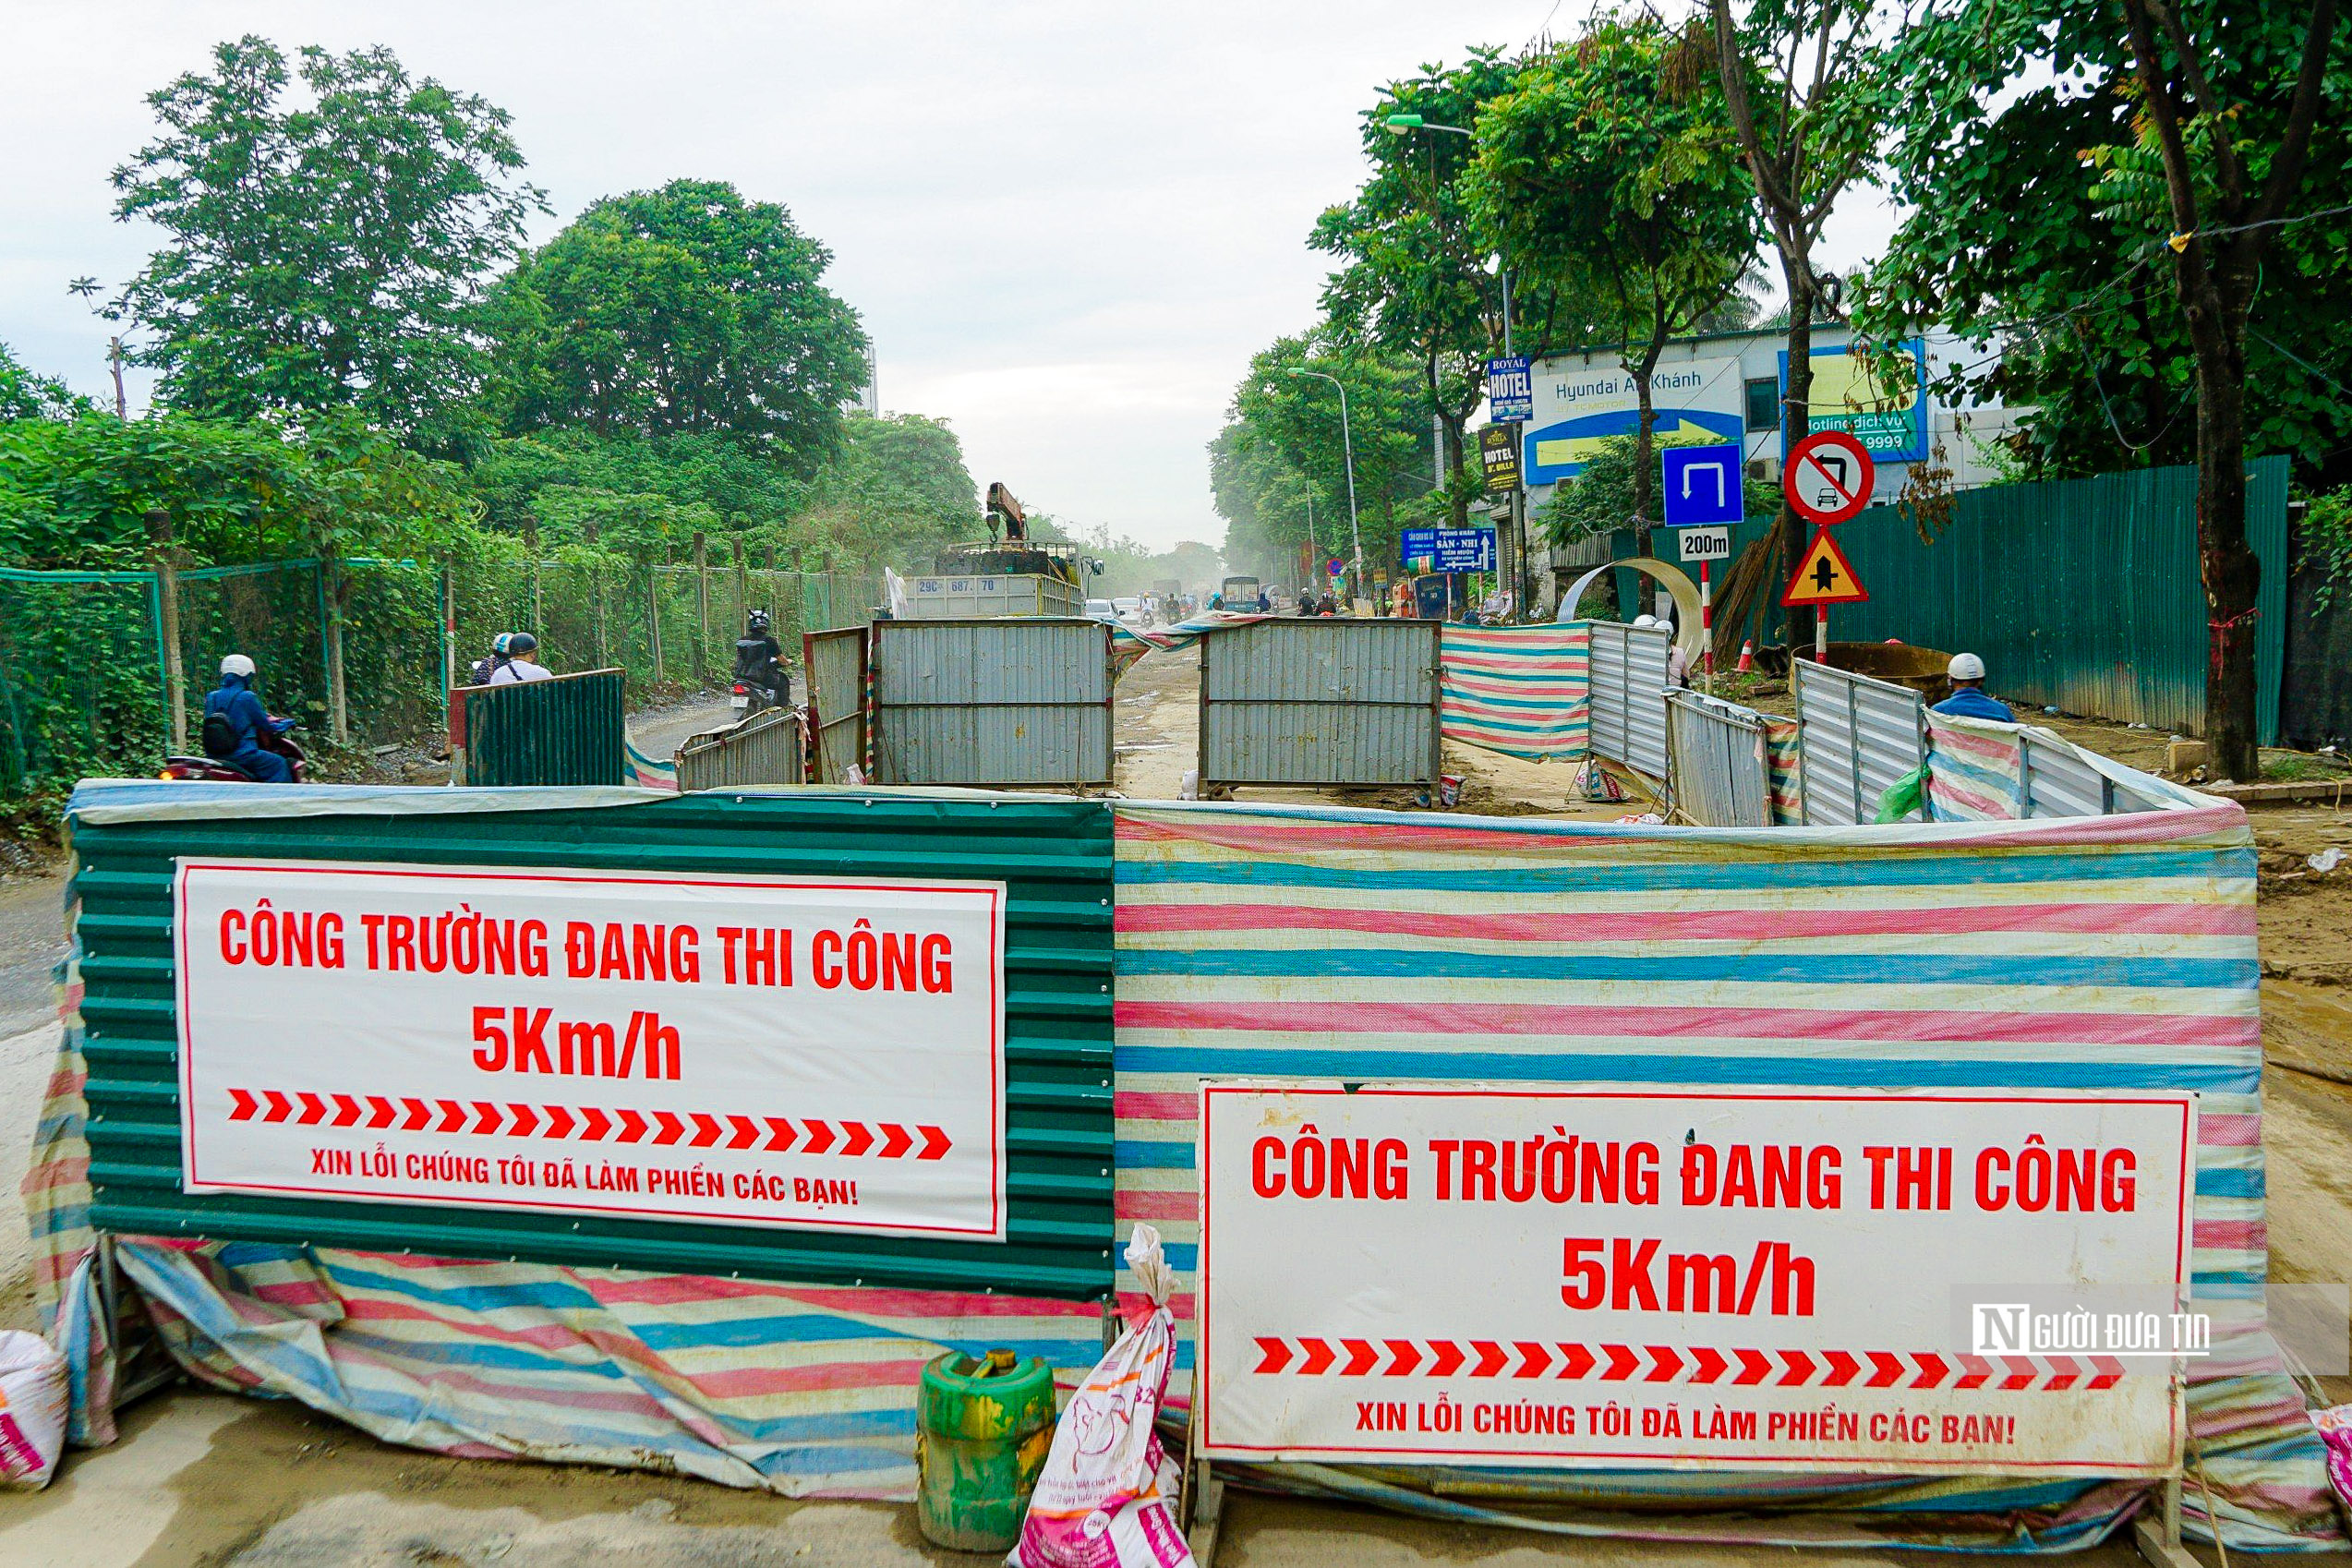 Sự kiện - Hà Nội: Người dân ngán ngẩm di chuyển qua đường gom đại lộ Thăng Long (Hình 5).